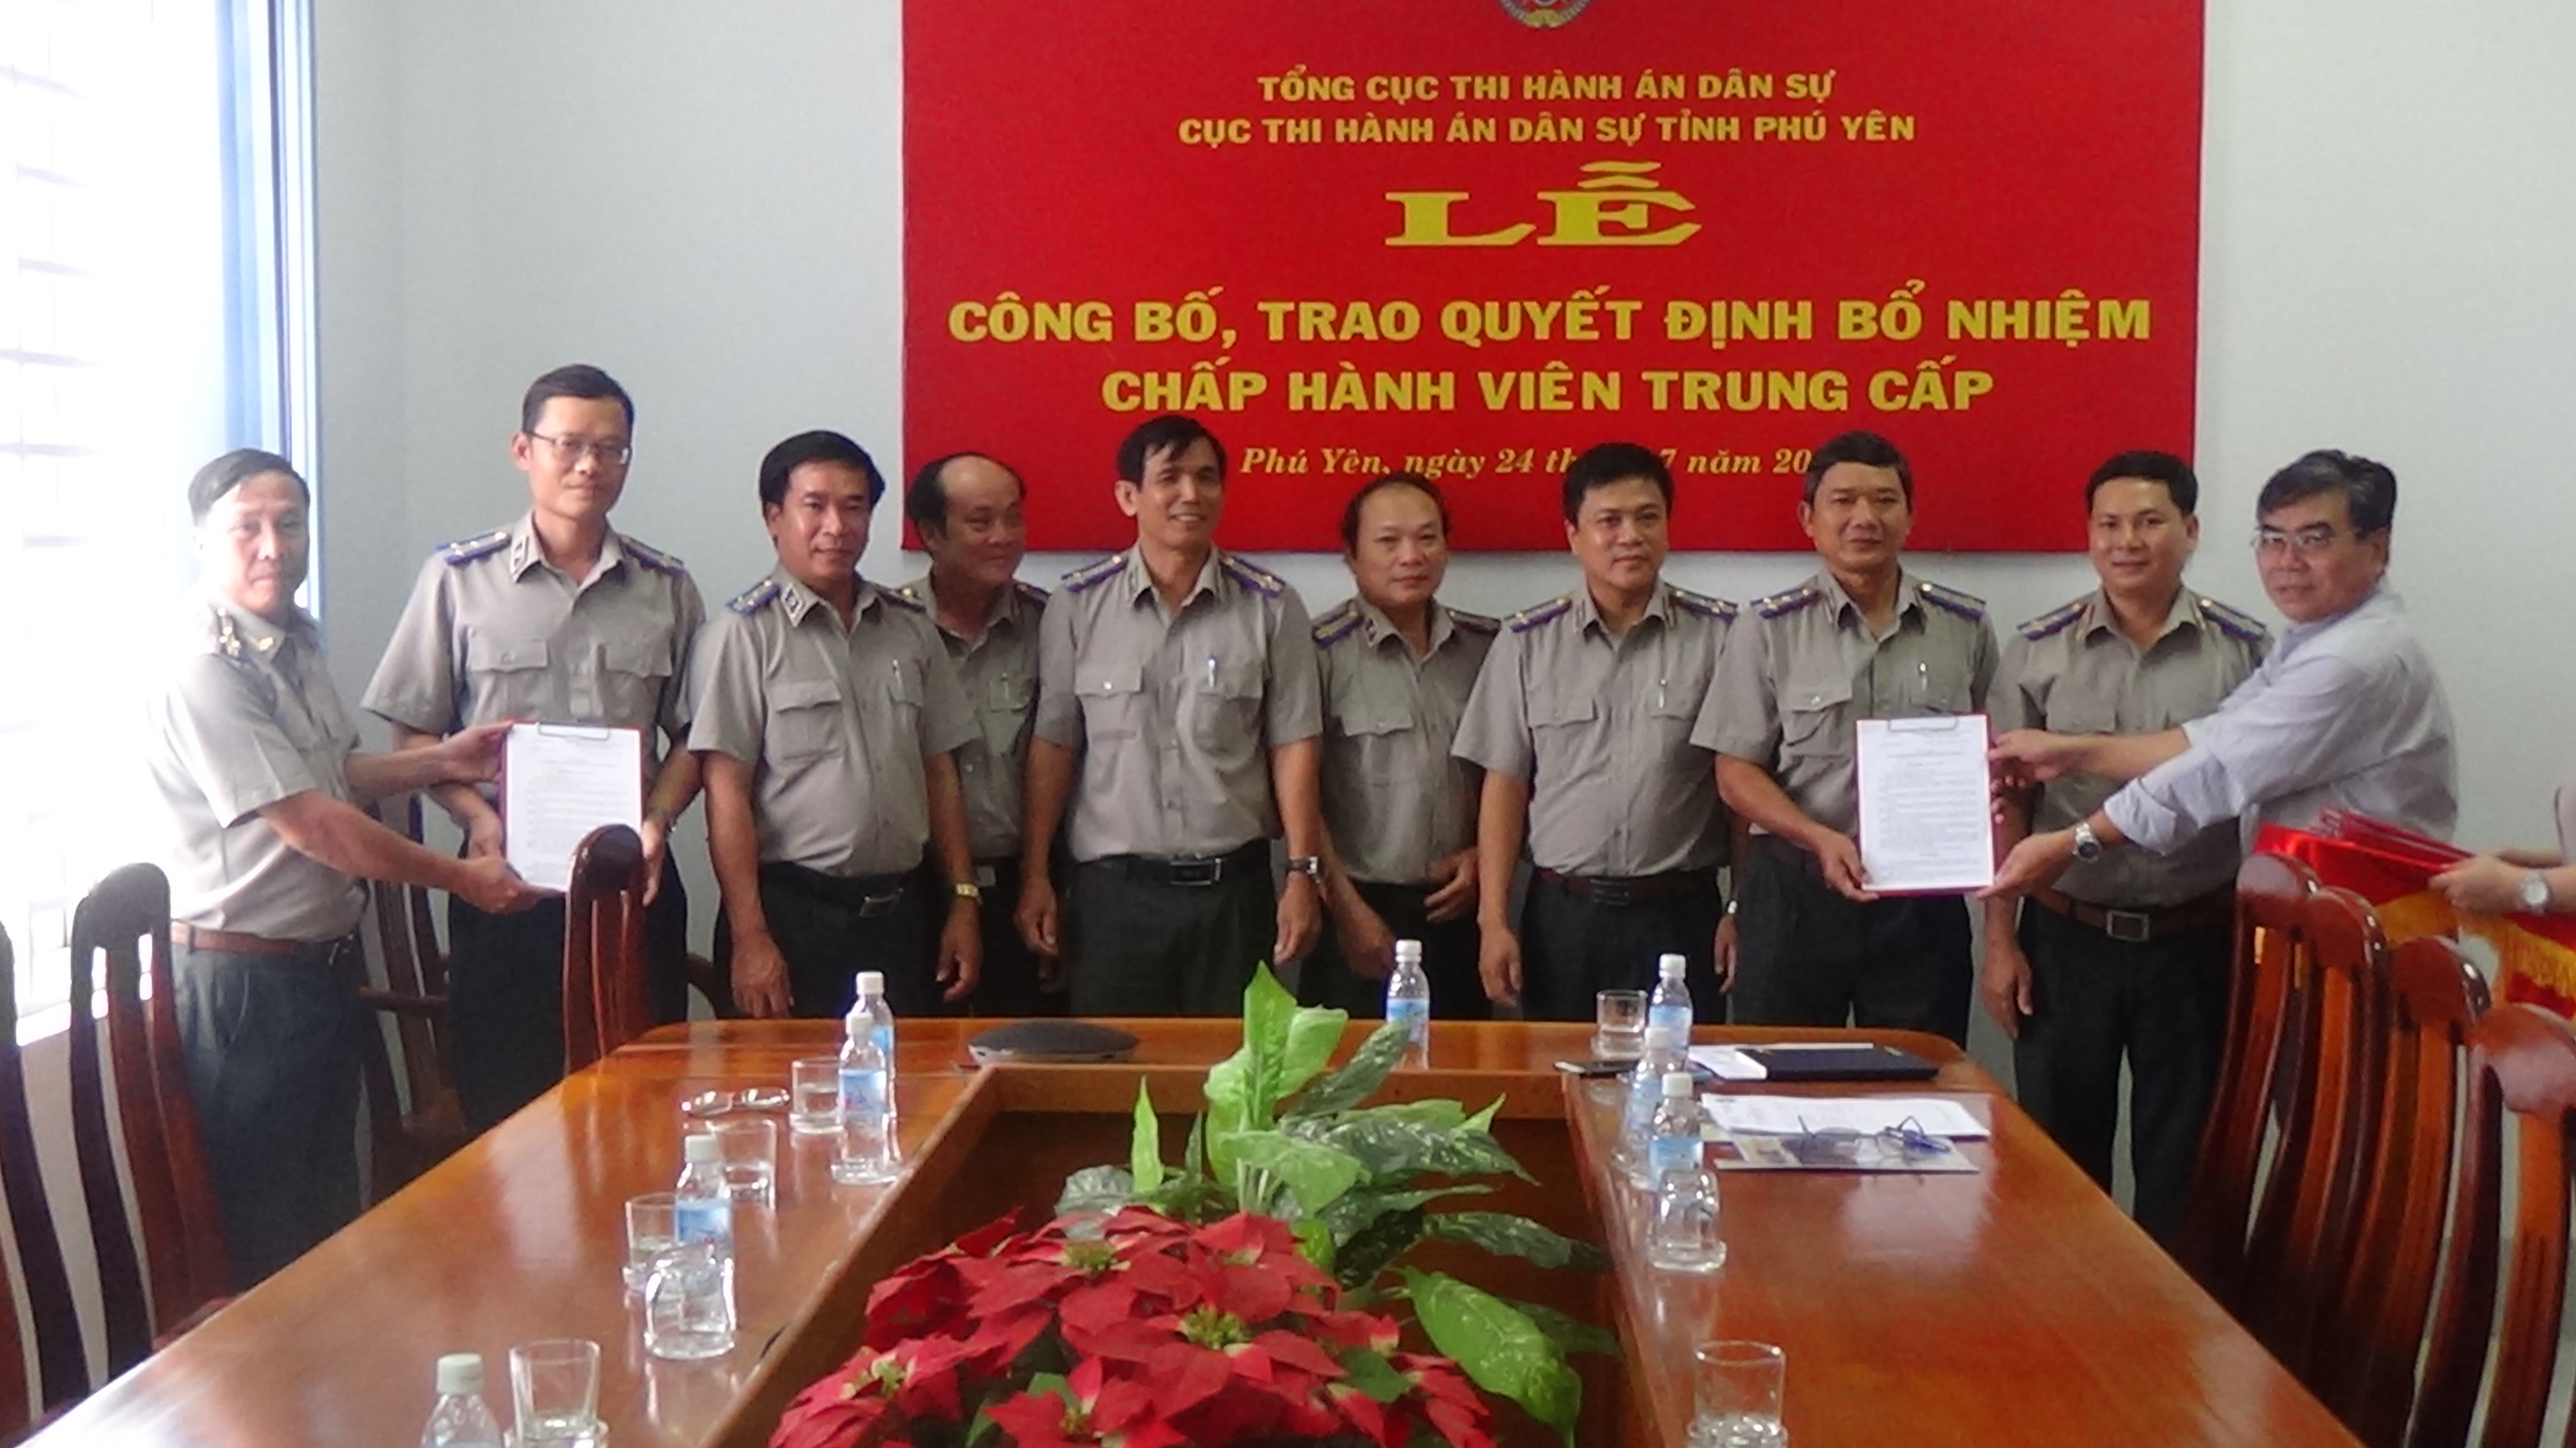 Cục THADS tỉnh Phú Yên: Tổ chức Lễ trao quyết định bổ nhiệm Chấp hành viên trung cấp